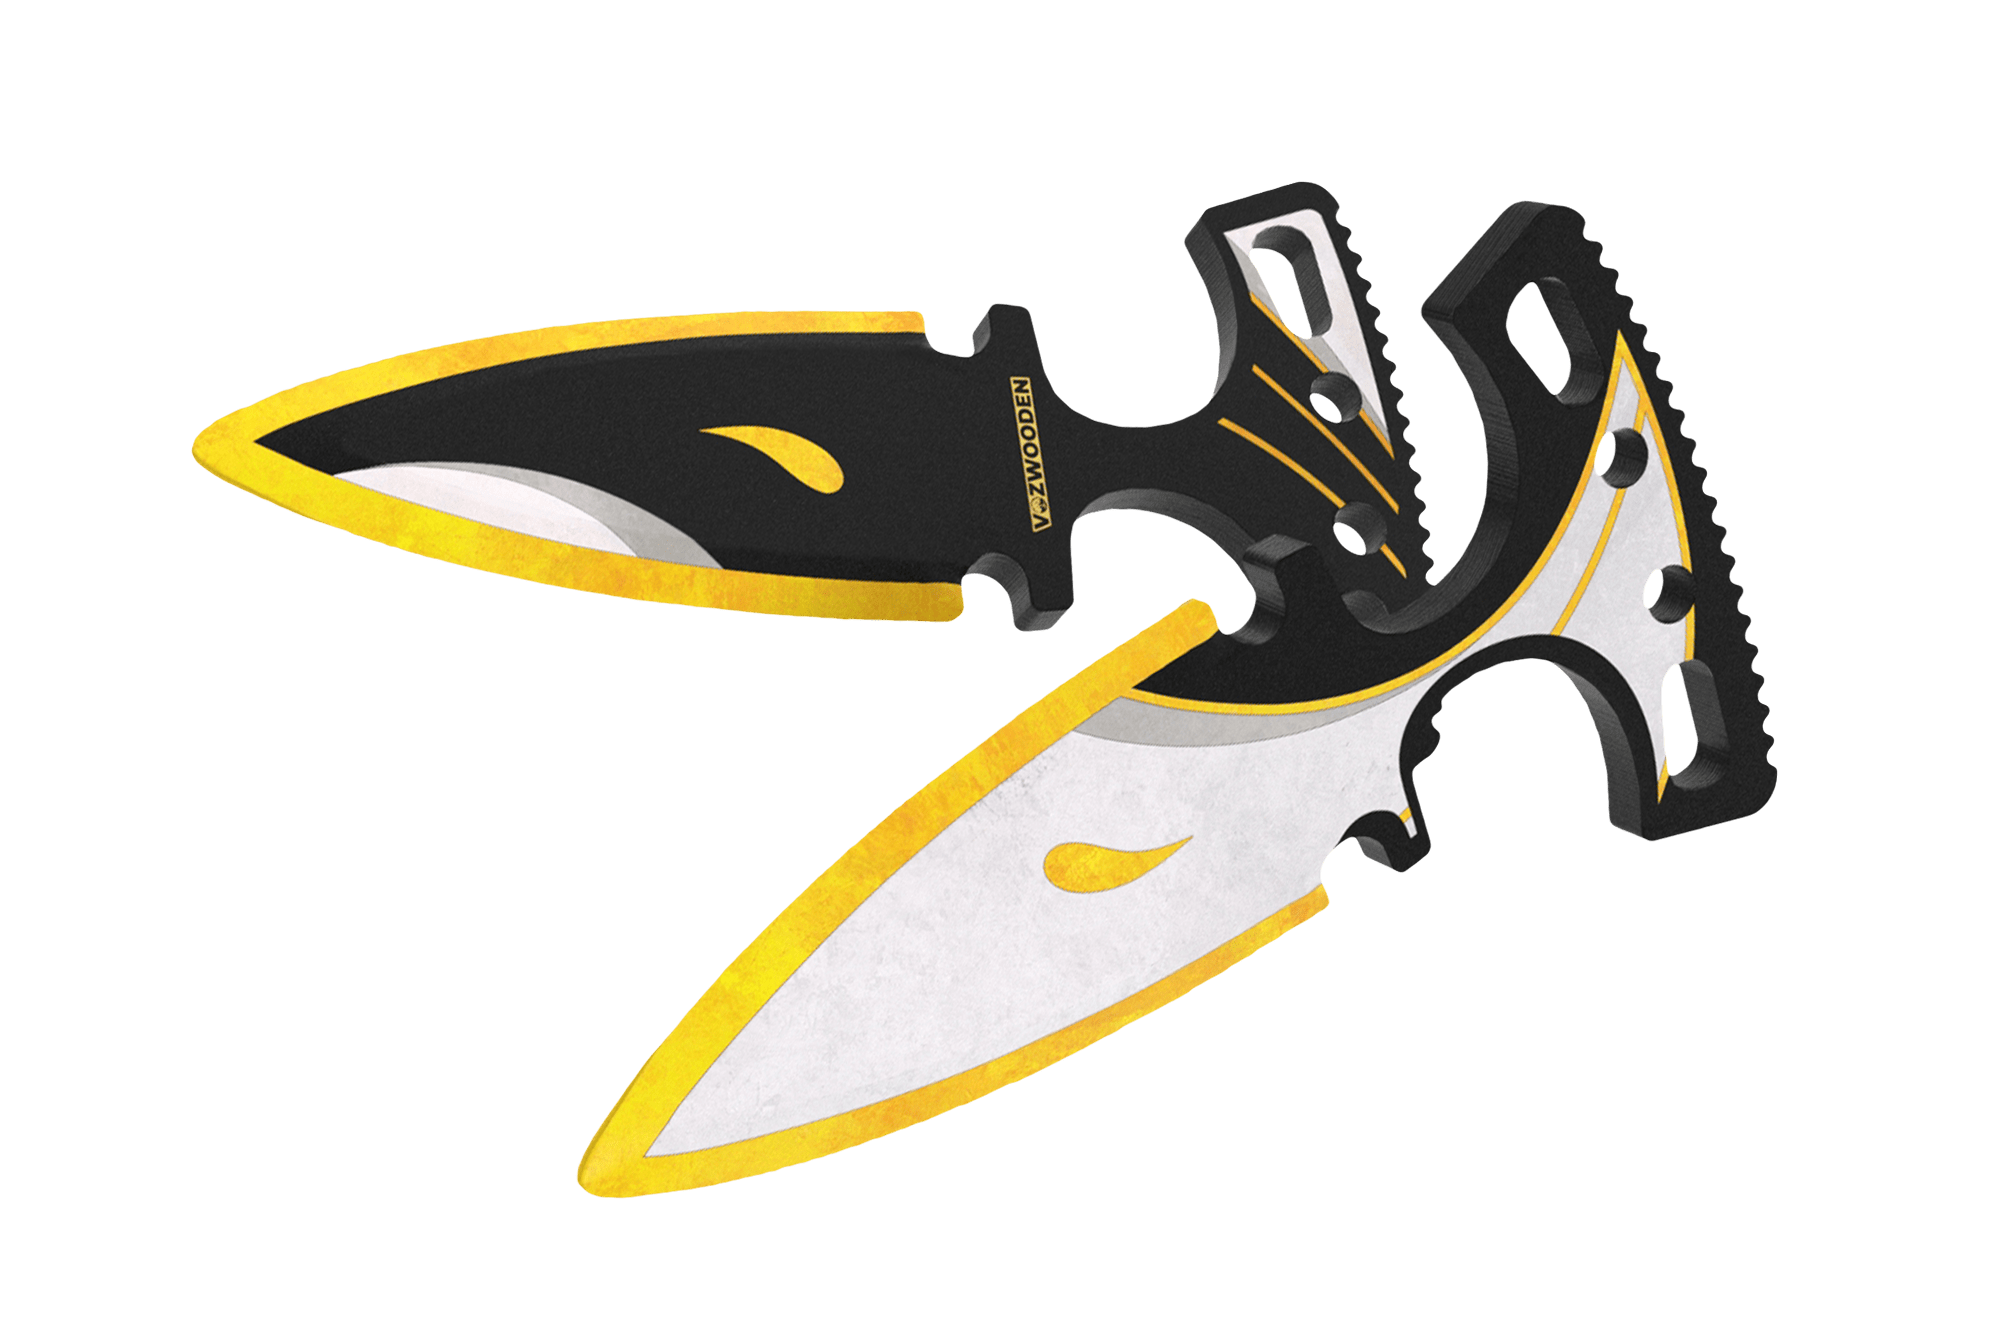 Тычковые ножи Standoff 2 -  Dual Daggers 